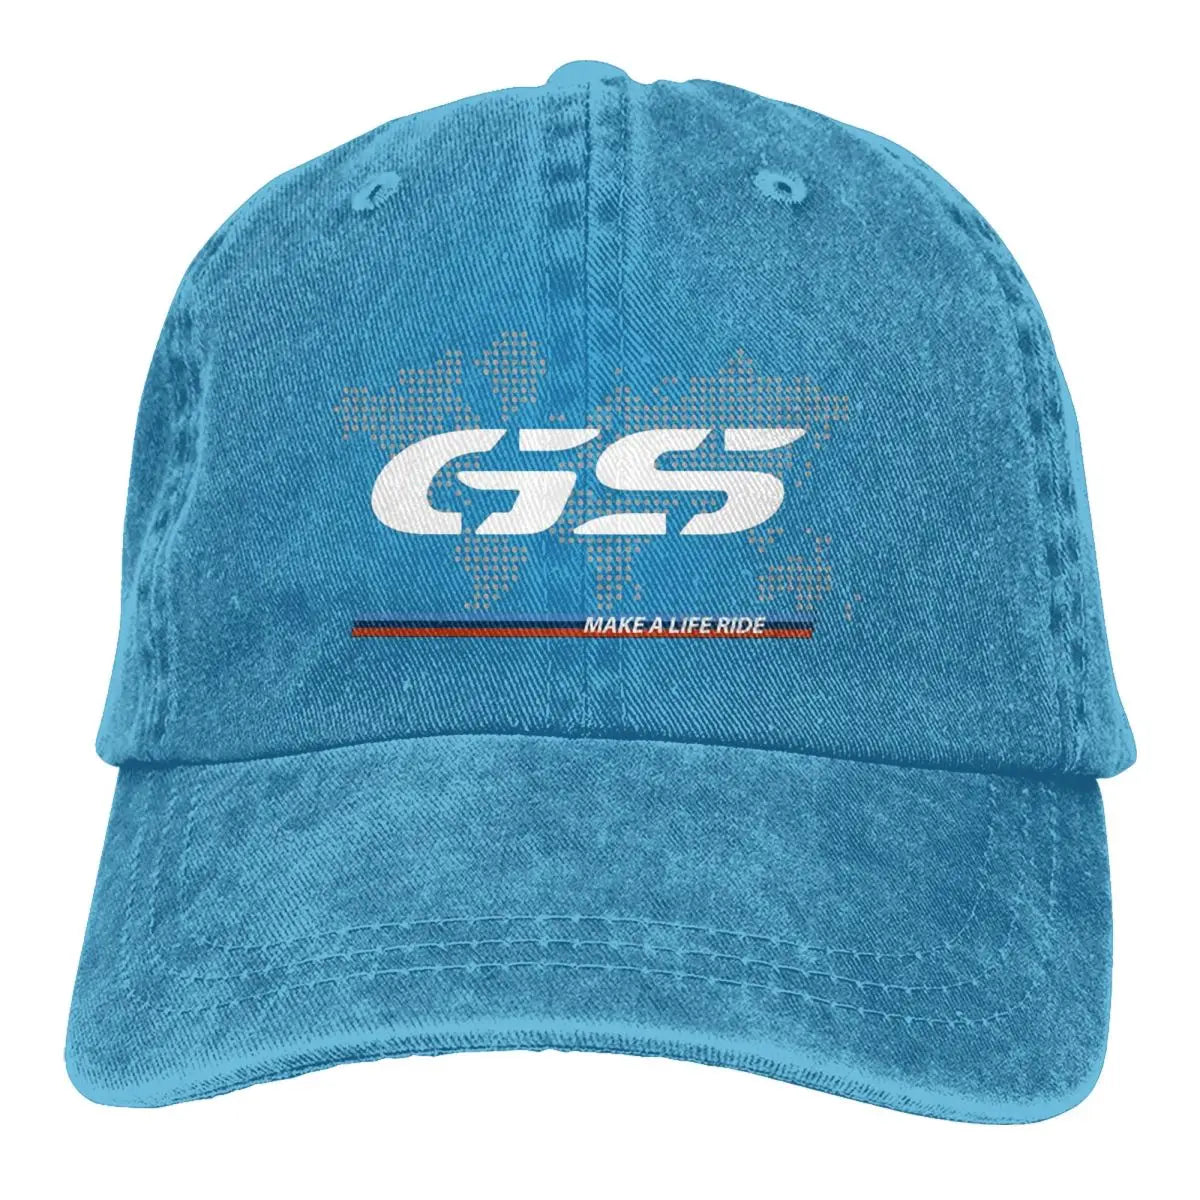 Casquette GS bleu